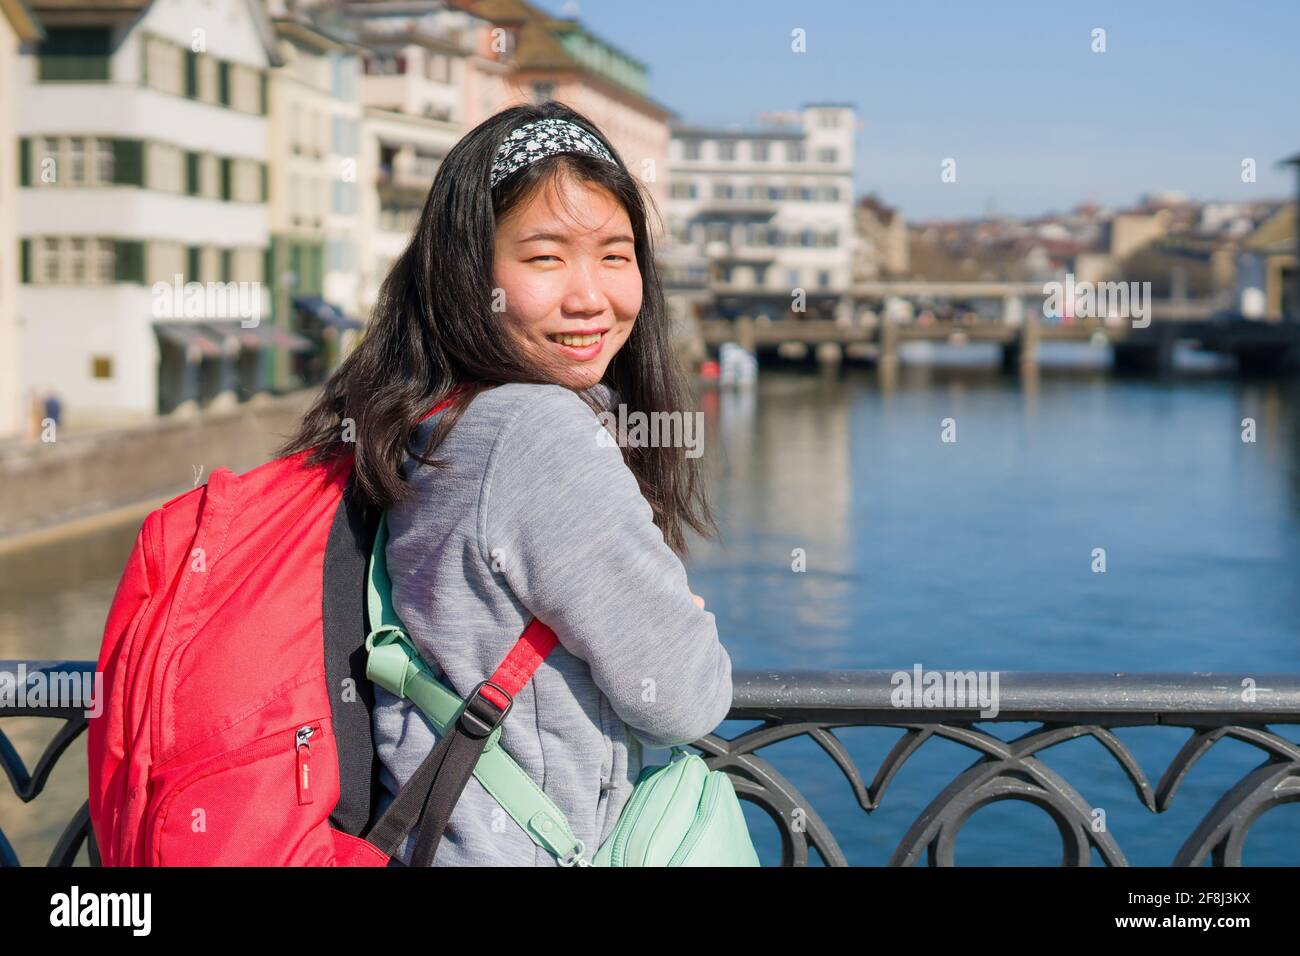 Europe Switzerland Zürich Girl Young Stockfotos und -bilder Kaufen - Alamy